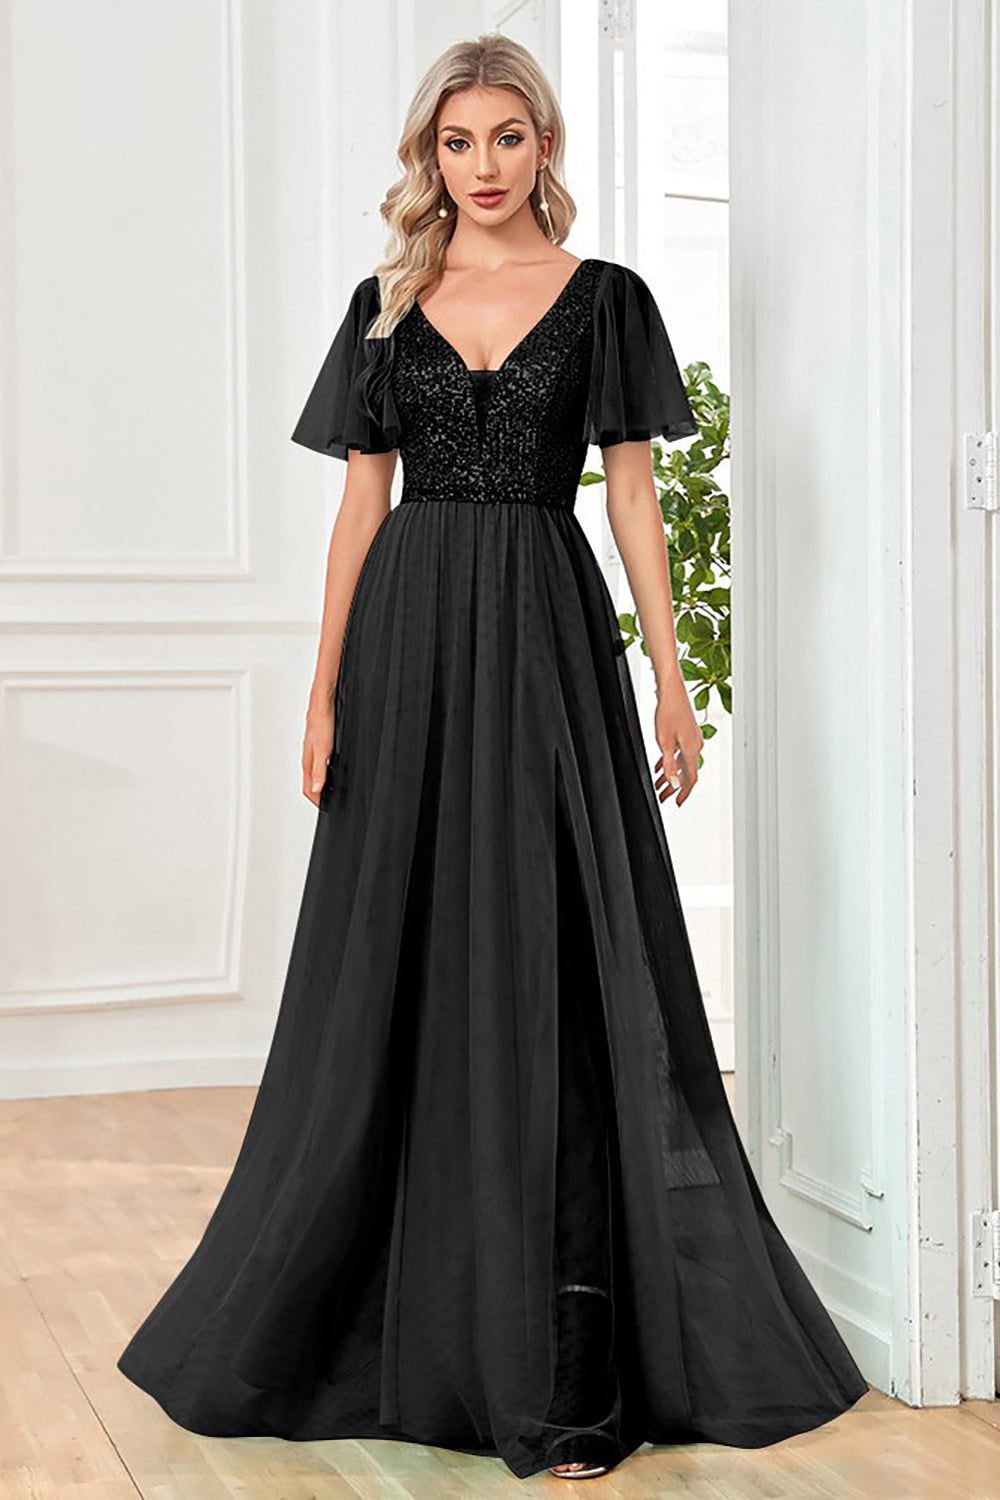 Tulle A-Line Sequins Black Formal Dress with Slit